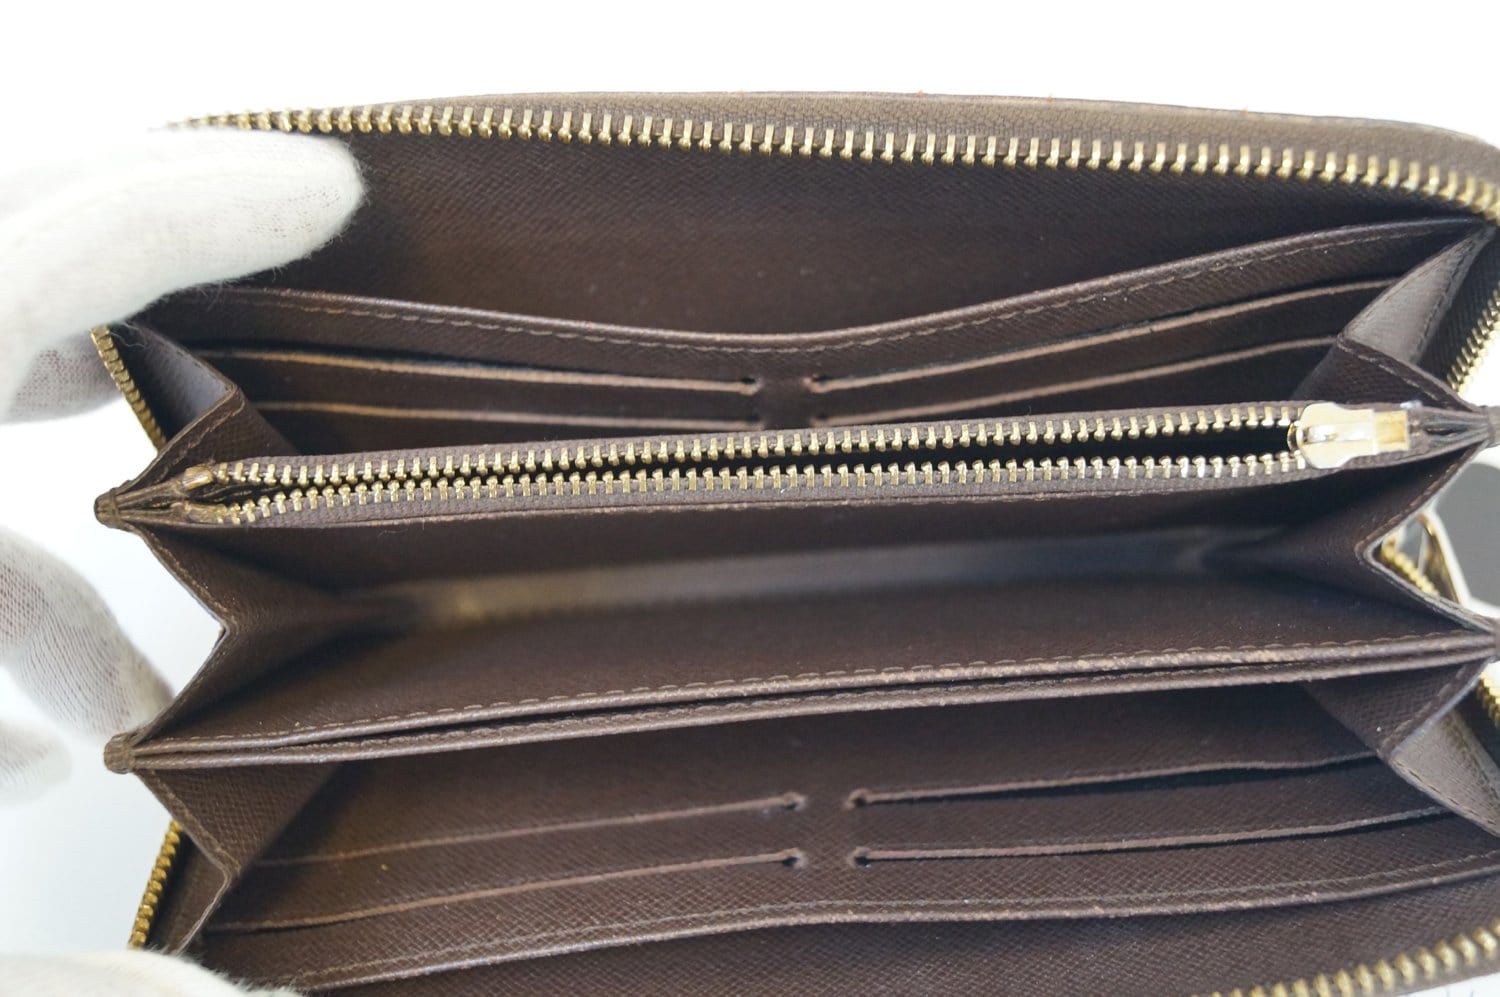 lv zippy compact wallet